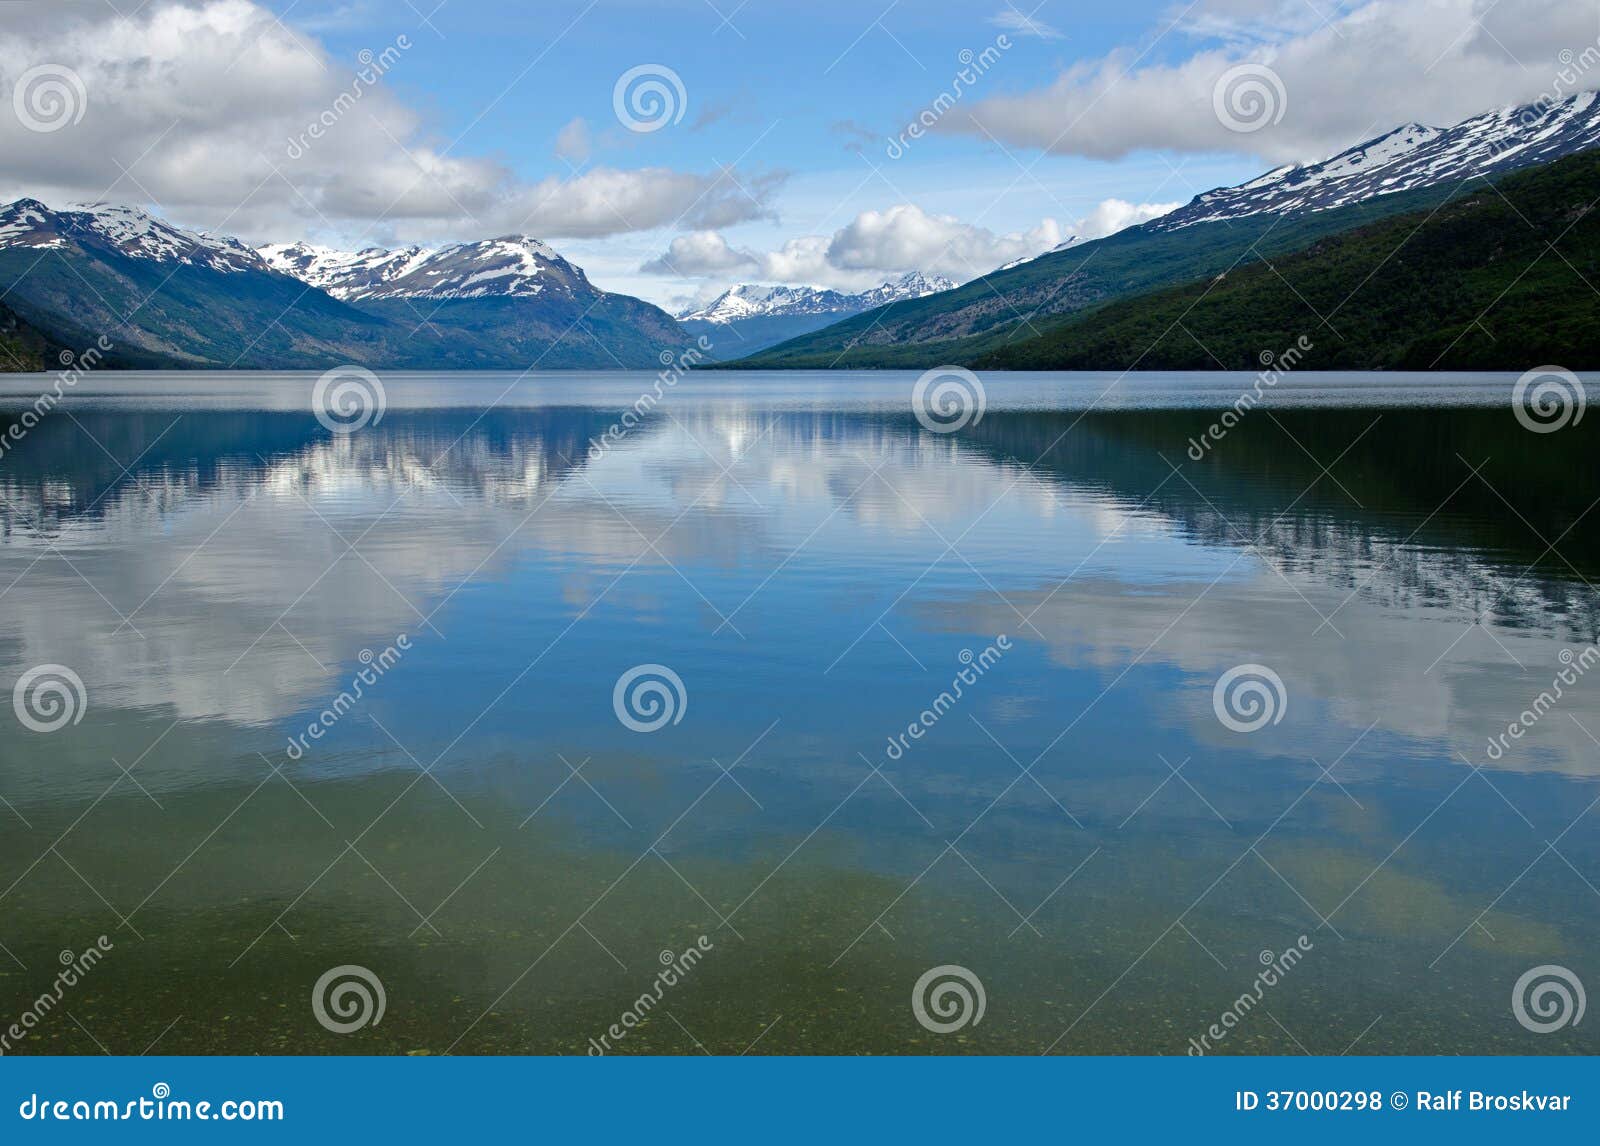 lago roca, tierra del fuego national park, ushuaia, patagonia,